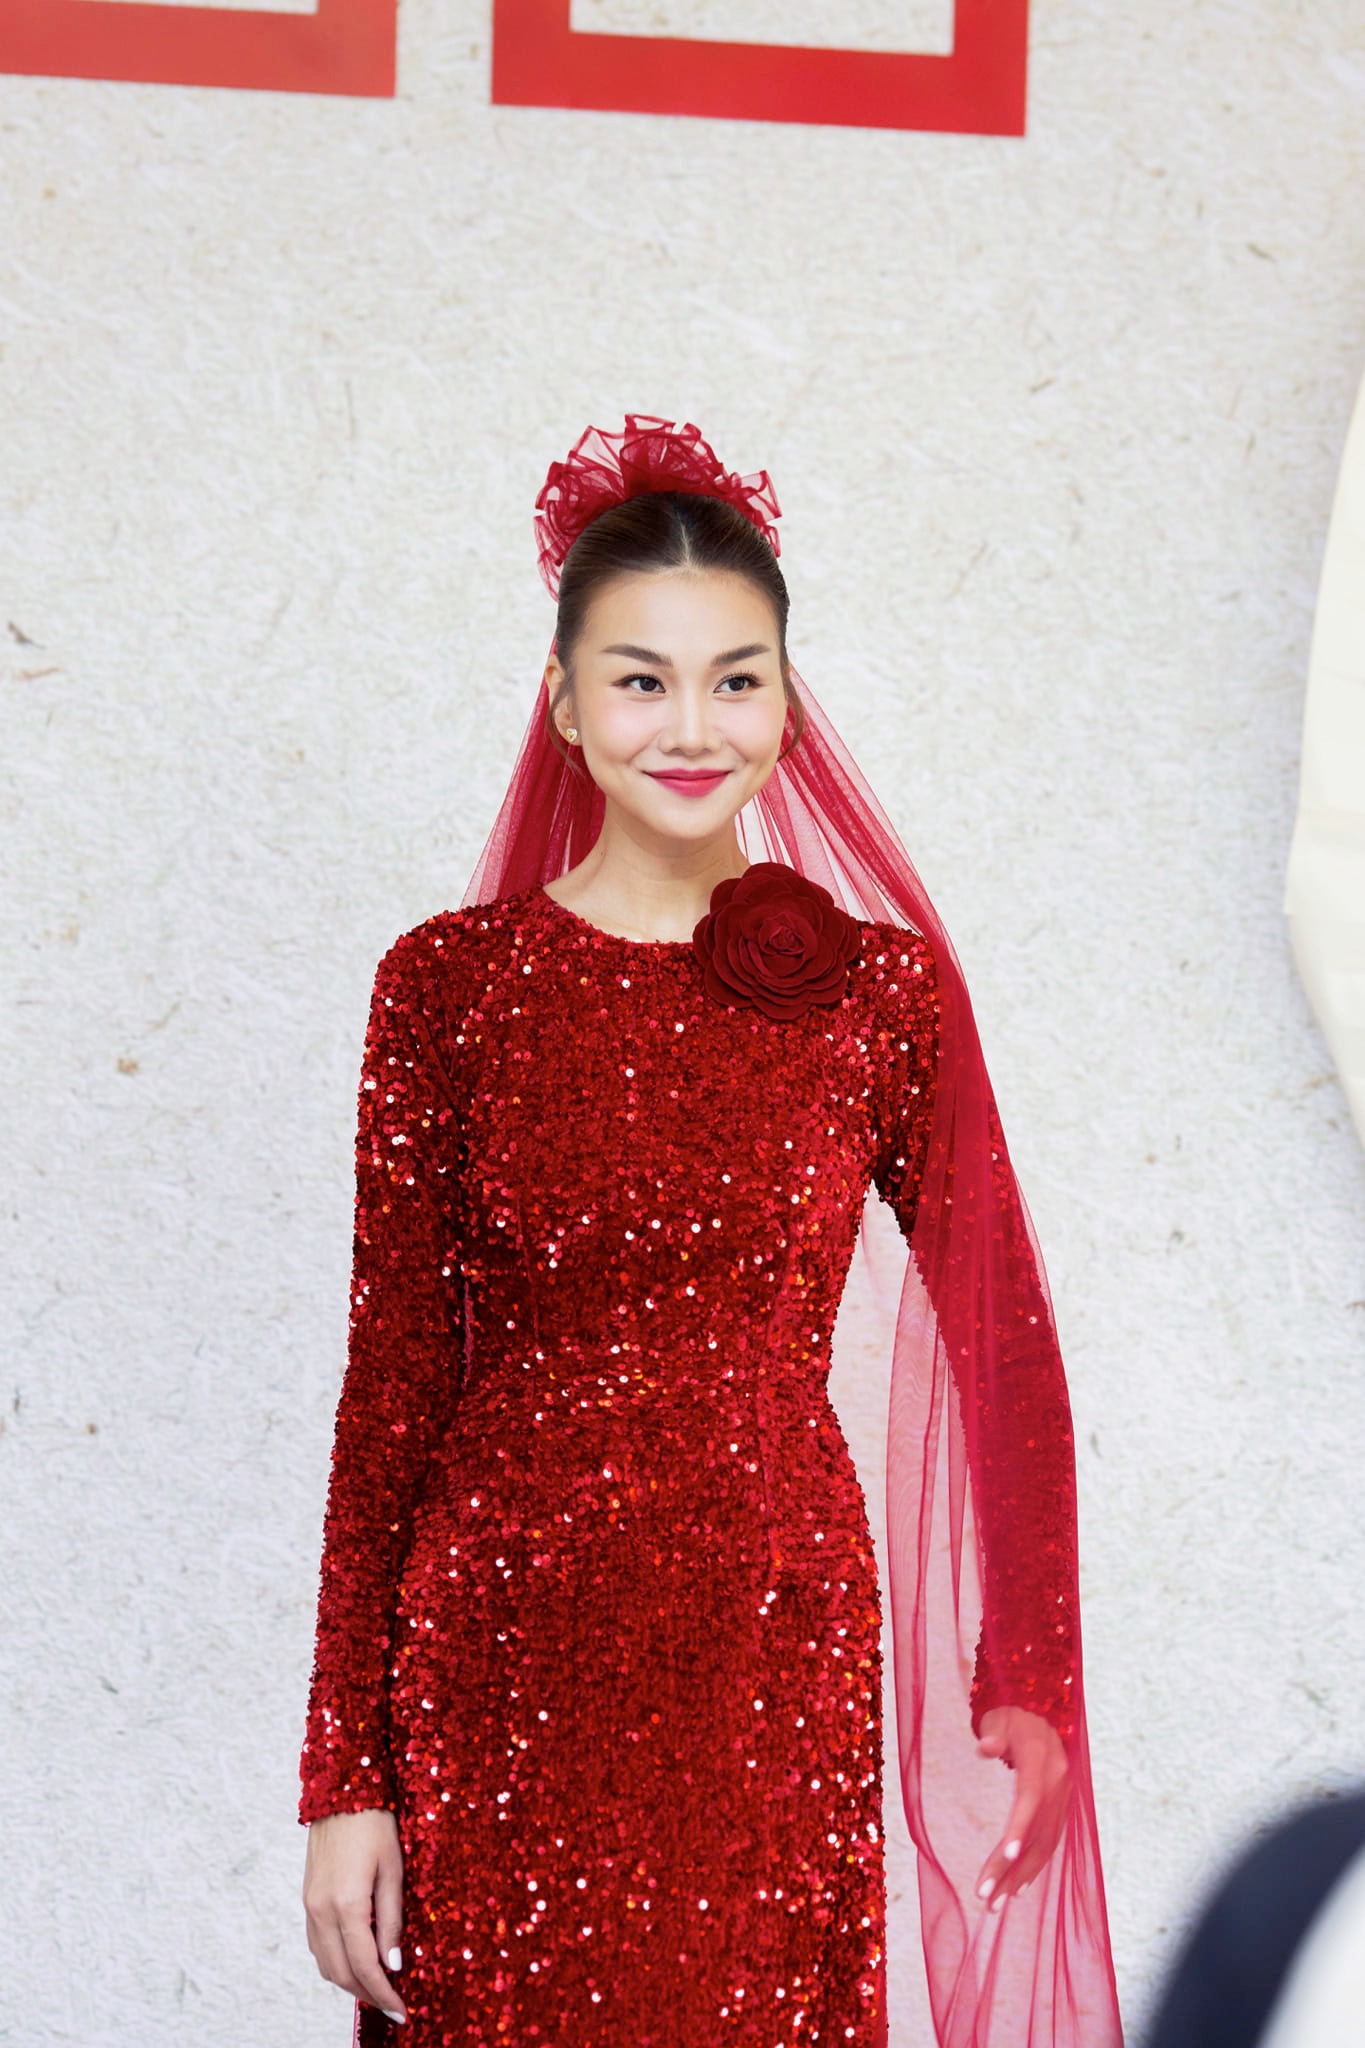 Hình ảnh từ hôn lễ của siêu mẫu Thanh Hằng, cô dâu đẹp rực rỡ trong sắc đỏ về nhà chồng - ảnh 2